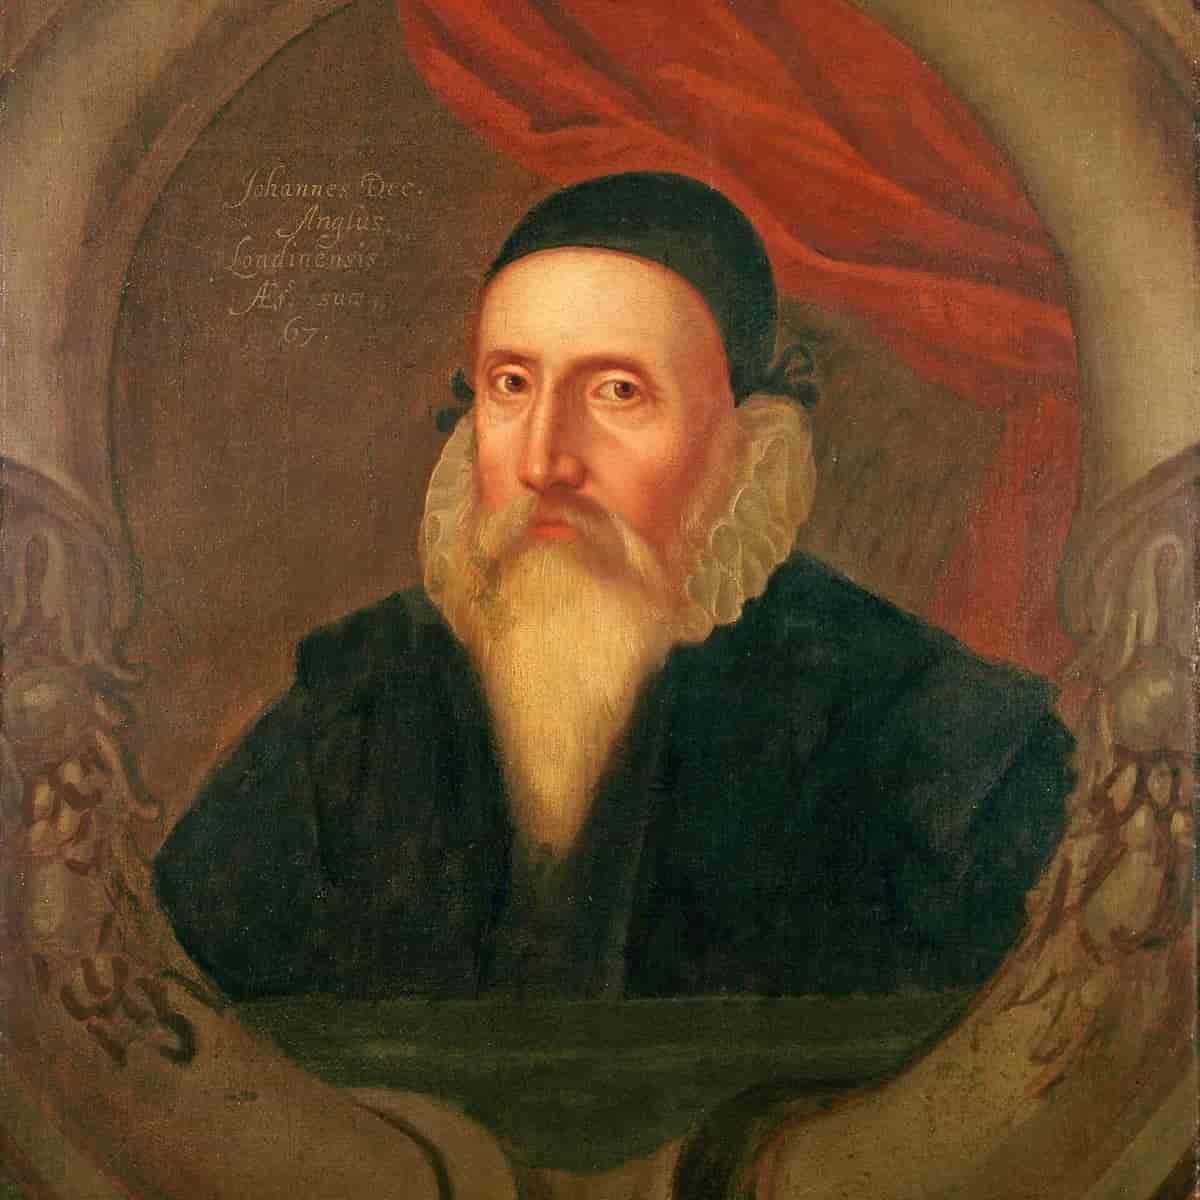 John Dee, cirka 1594